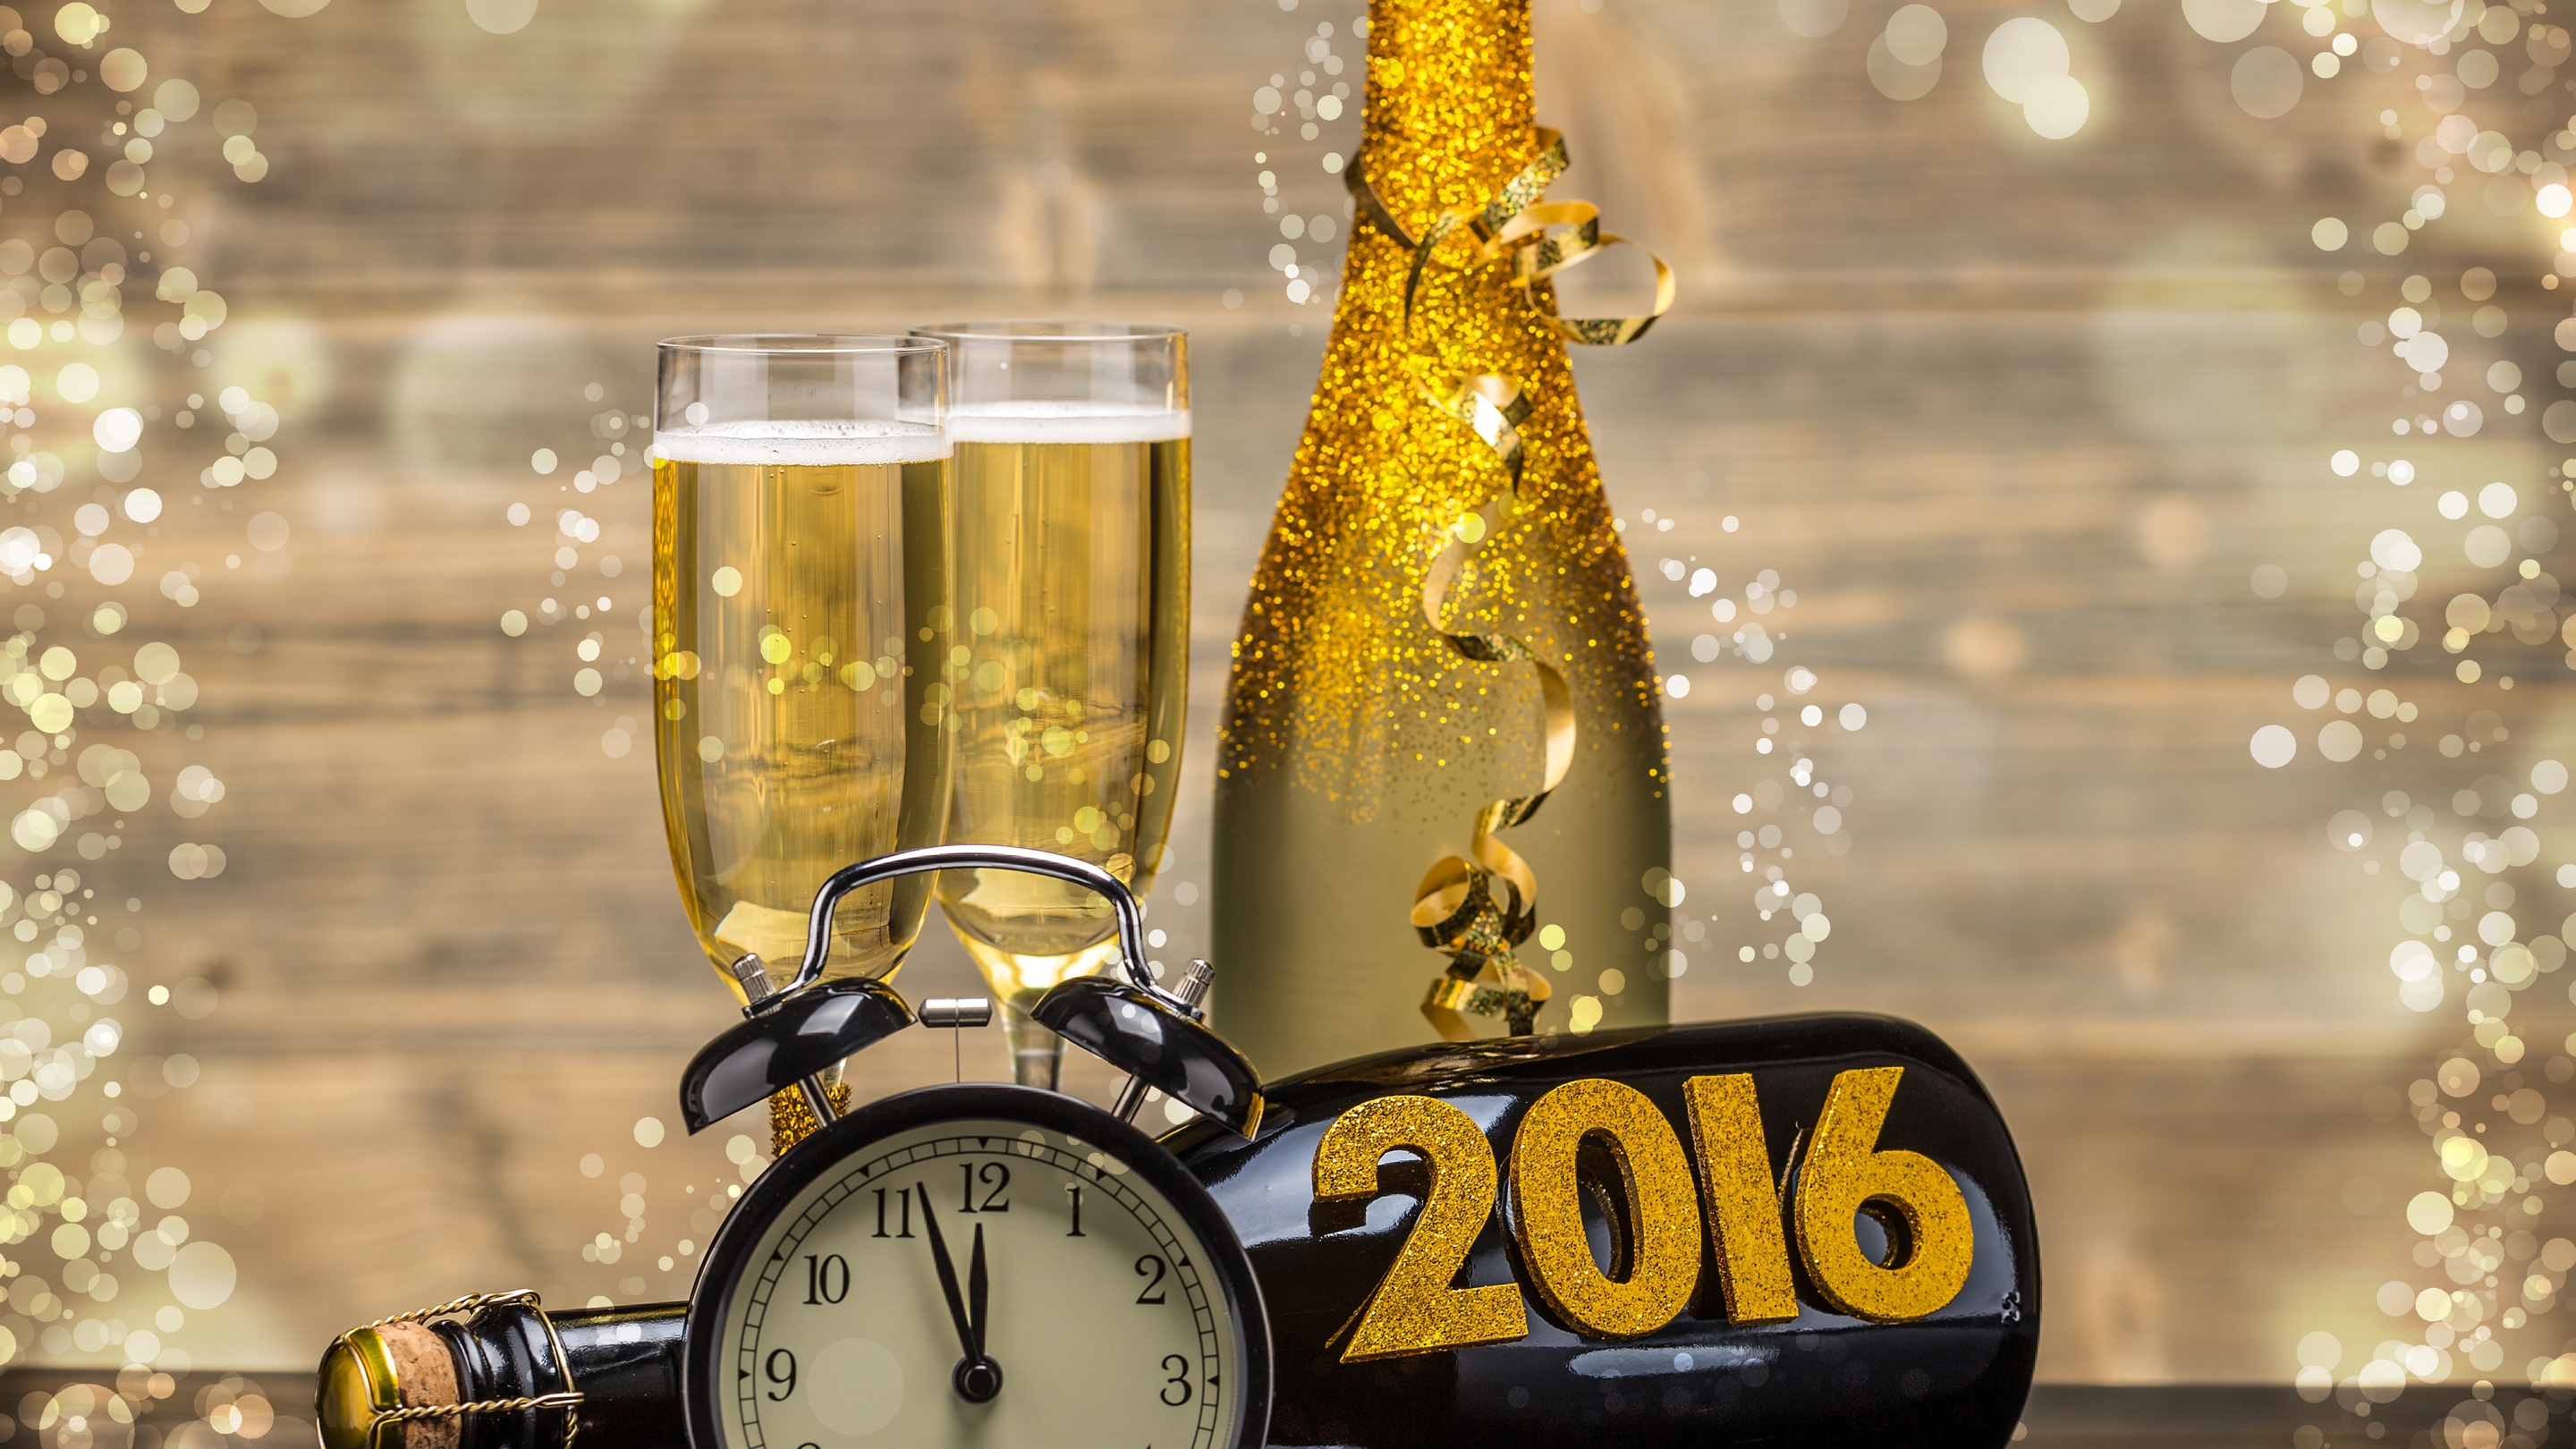 Картинка: Часы, 2016, шампанское, ленточка, блёстки, блики, фужеры, будильник, время